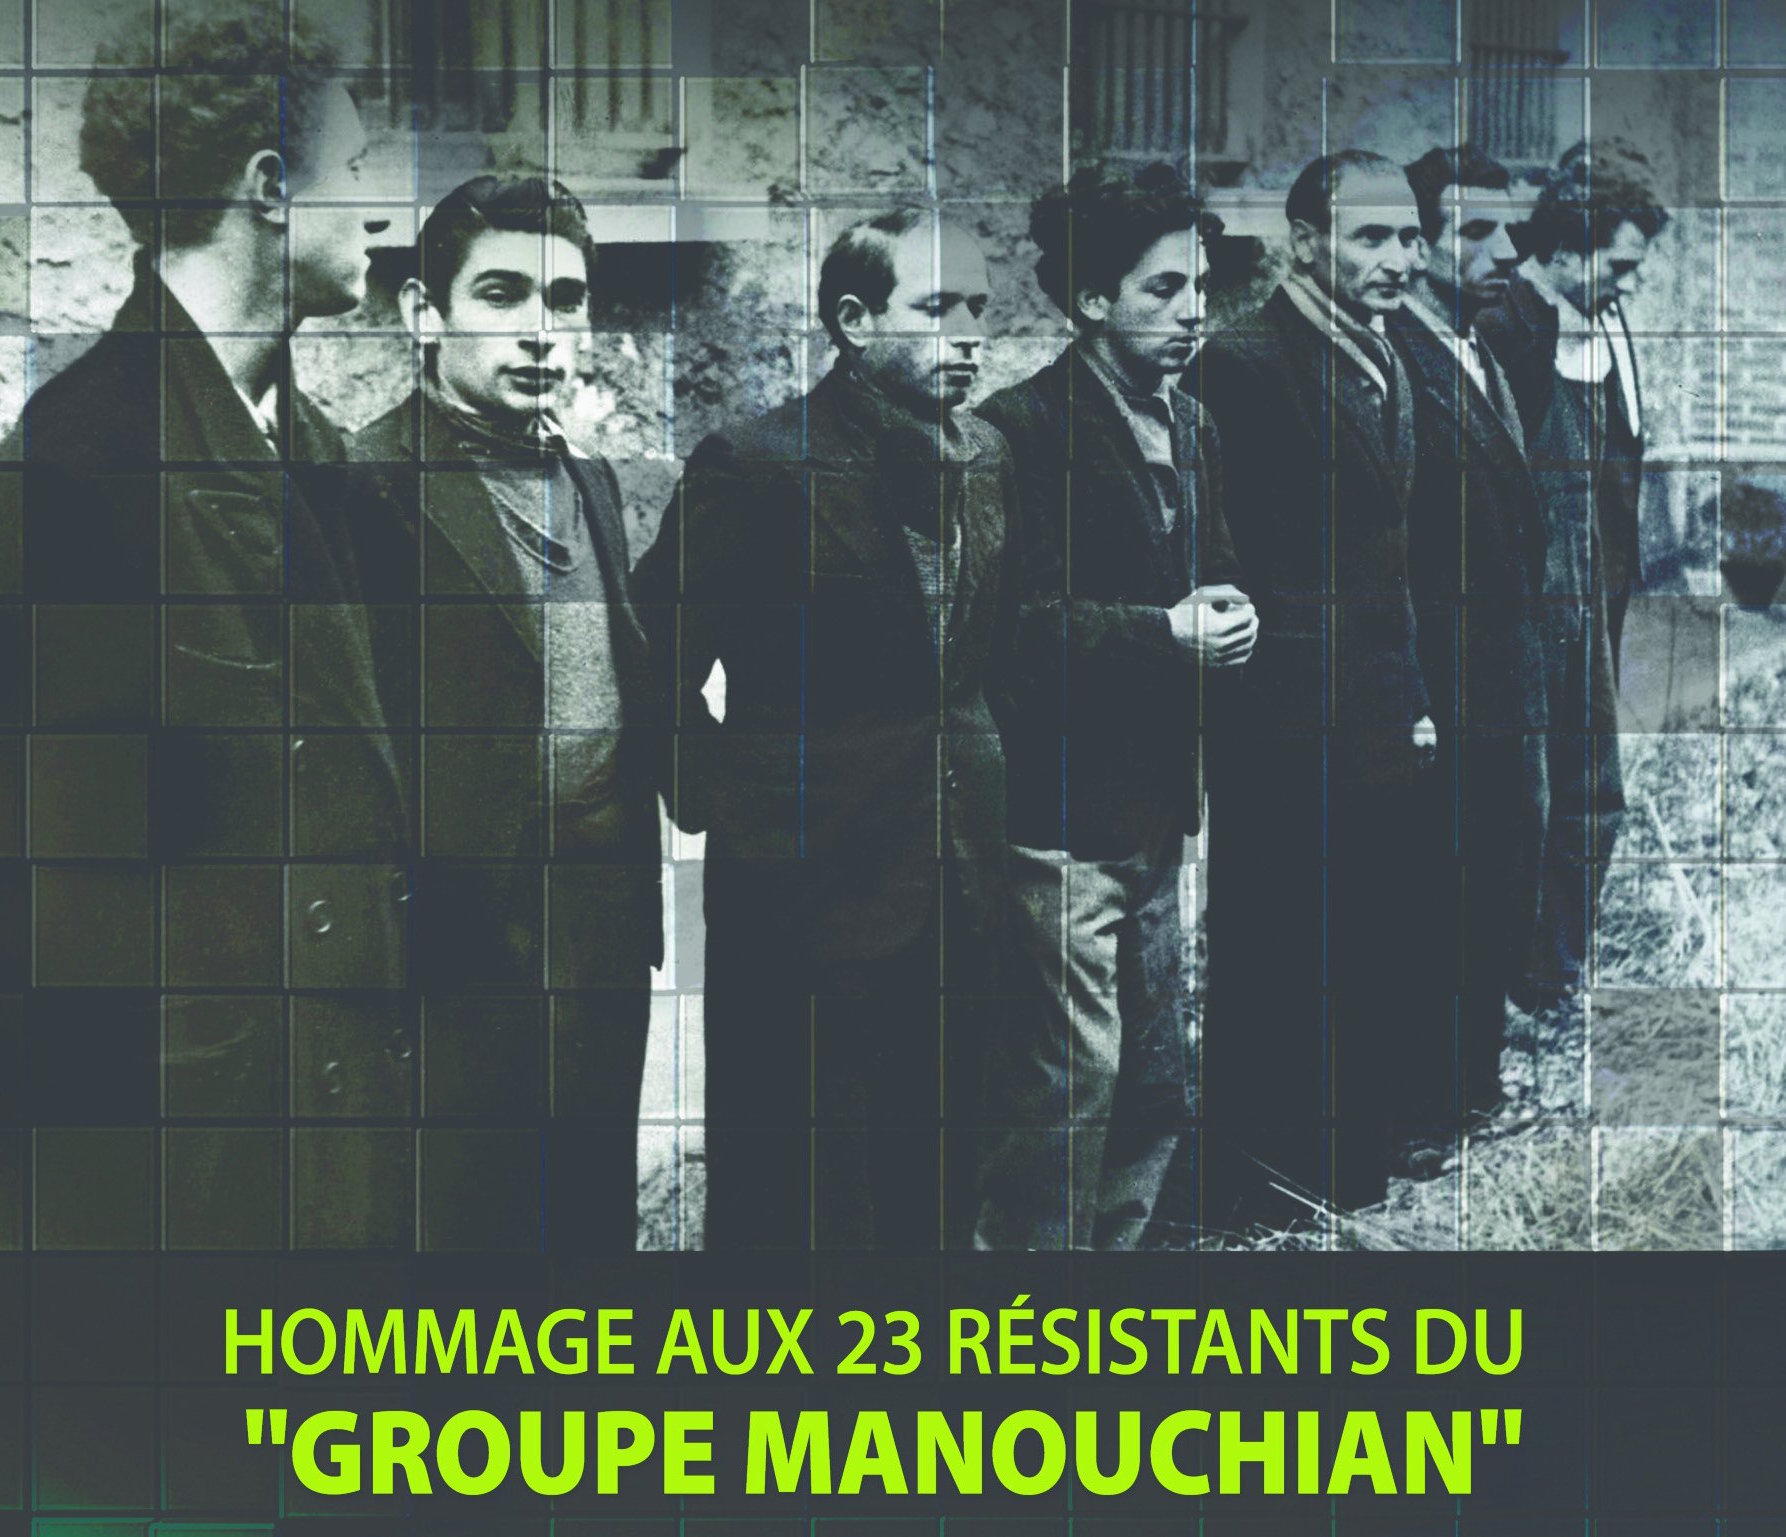 Hommage aux 23 résistants du groupe Manouchian, le 25 février à 10 heures